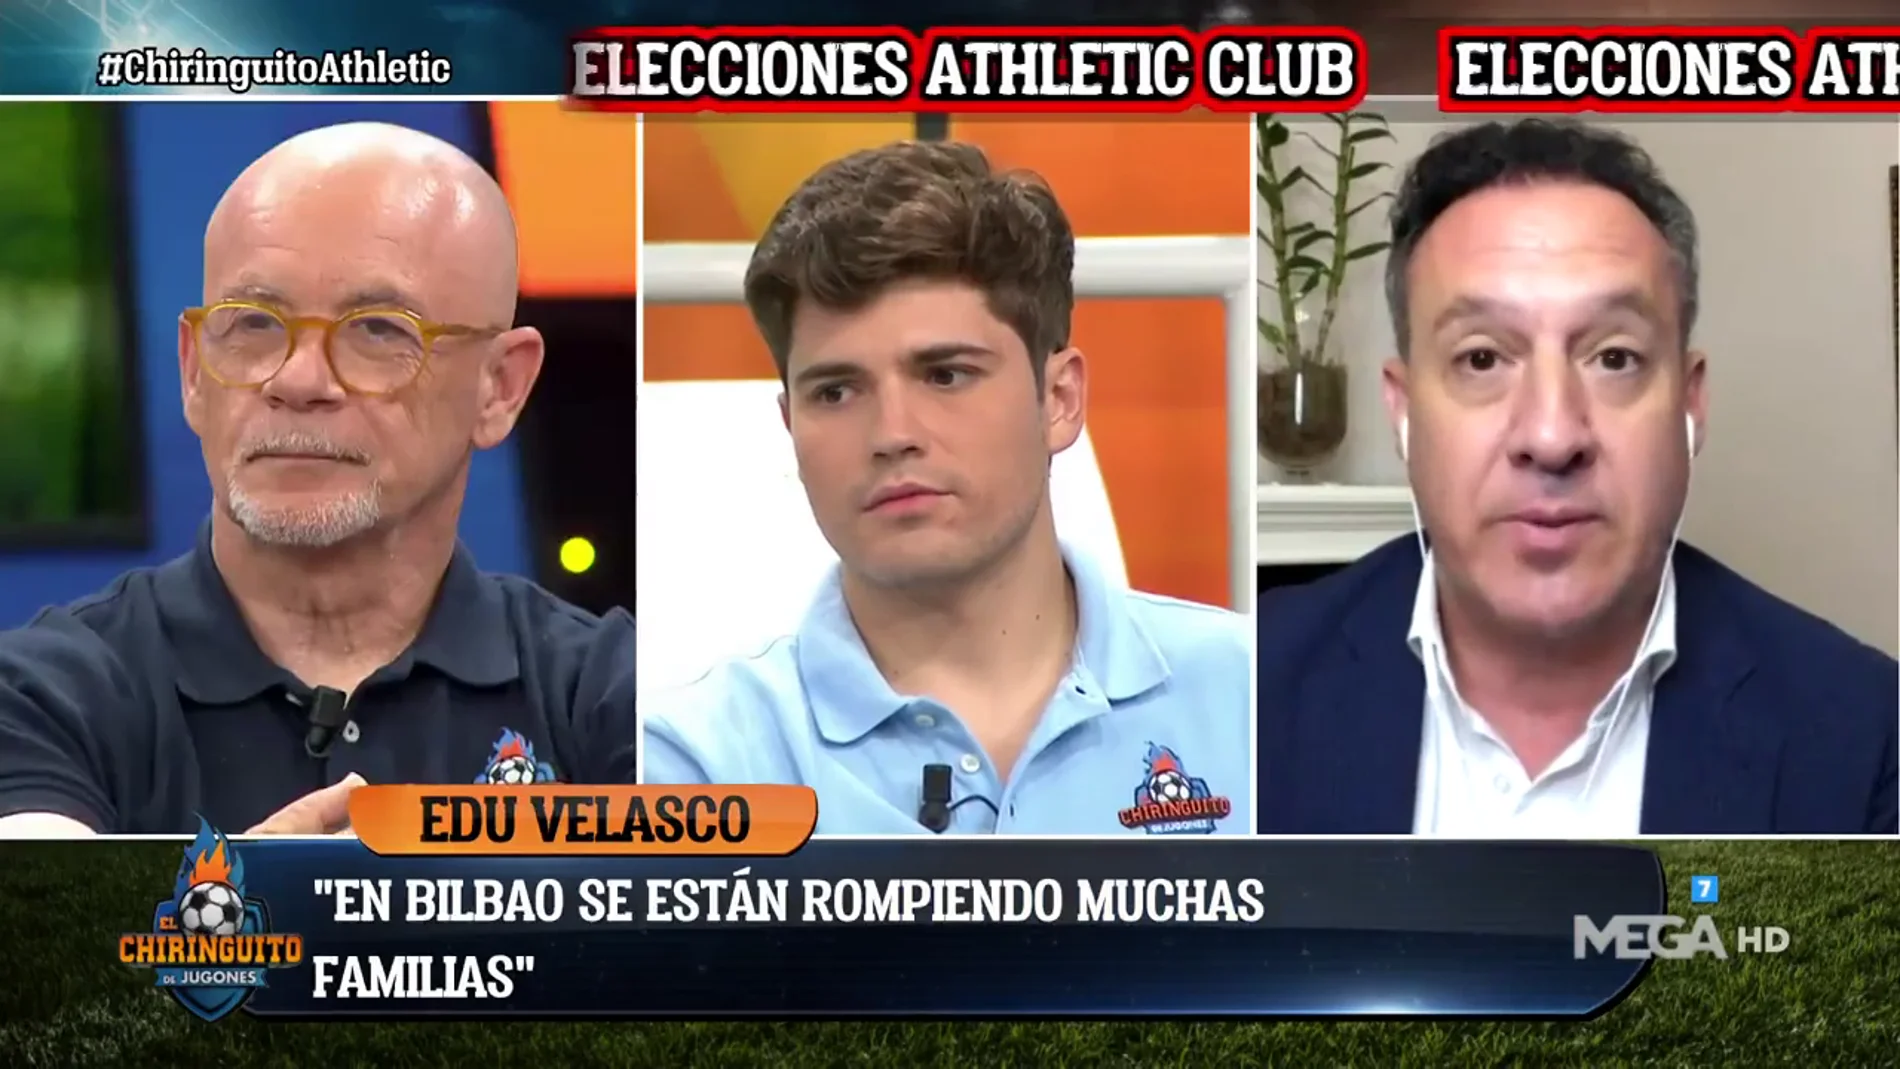 Edu Velasco: "Ser presidente del Athletic es más importante que ser alcalde"